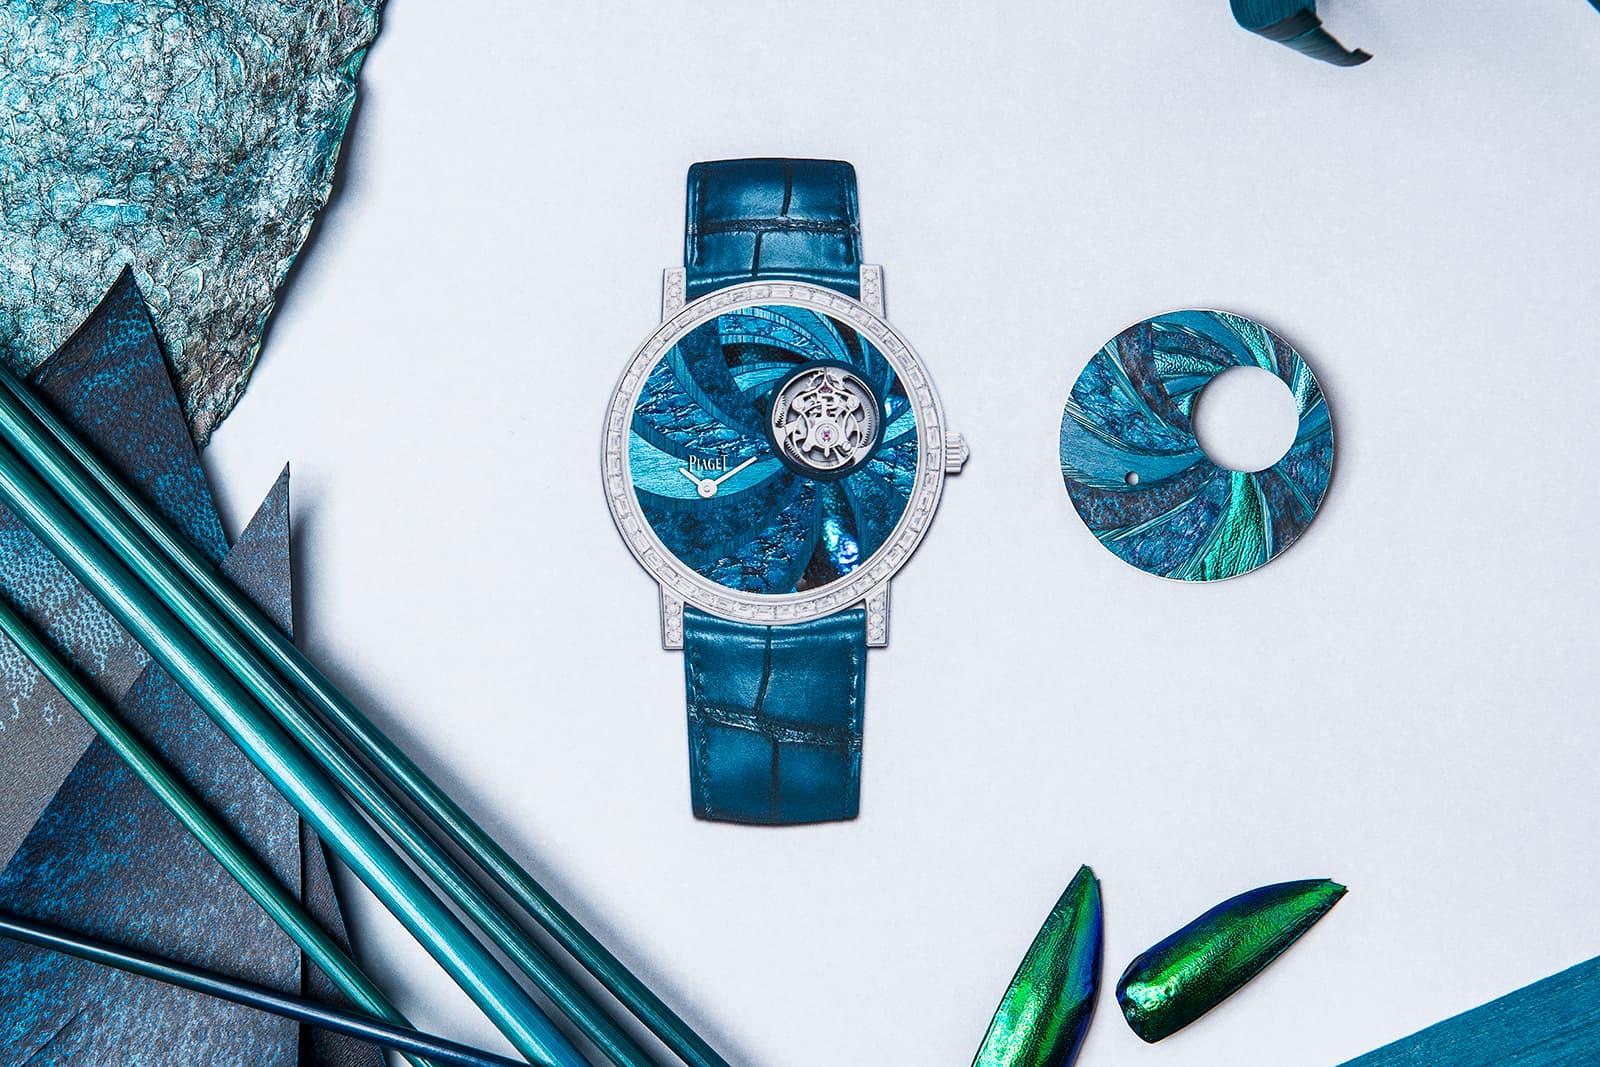 Часы Piaget Celestial Dance с маркетри из синей соломы, кожи, пергамента, надкрылий жука и граба из коллекции Extraordinary Lights